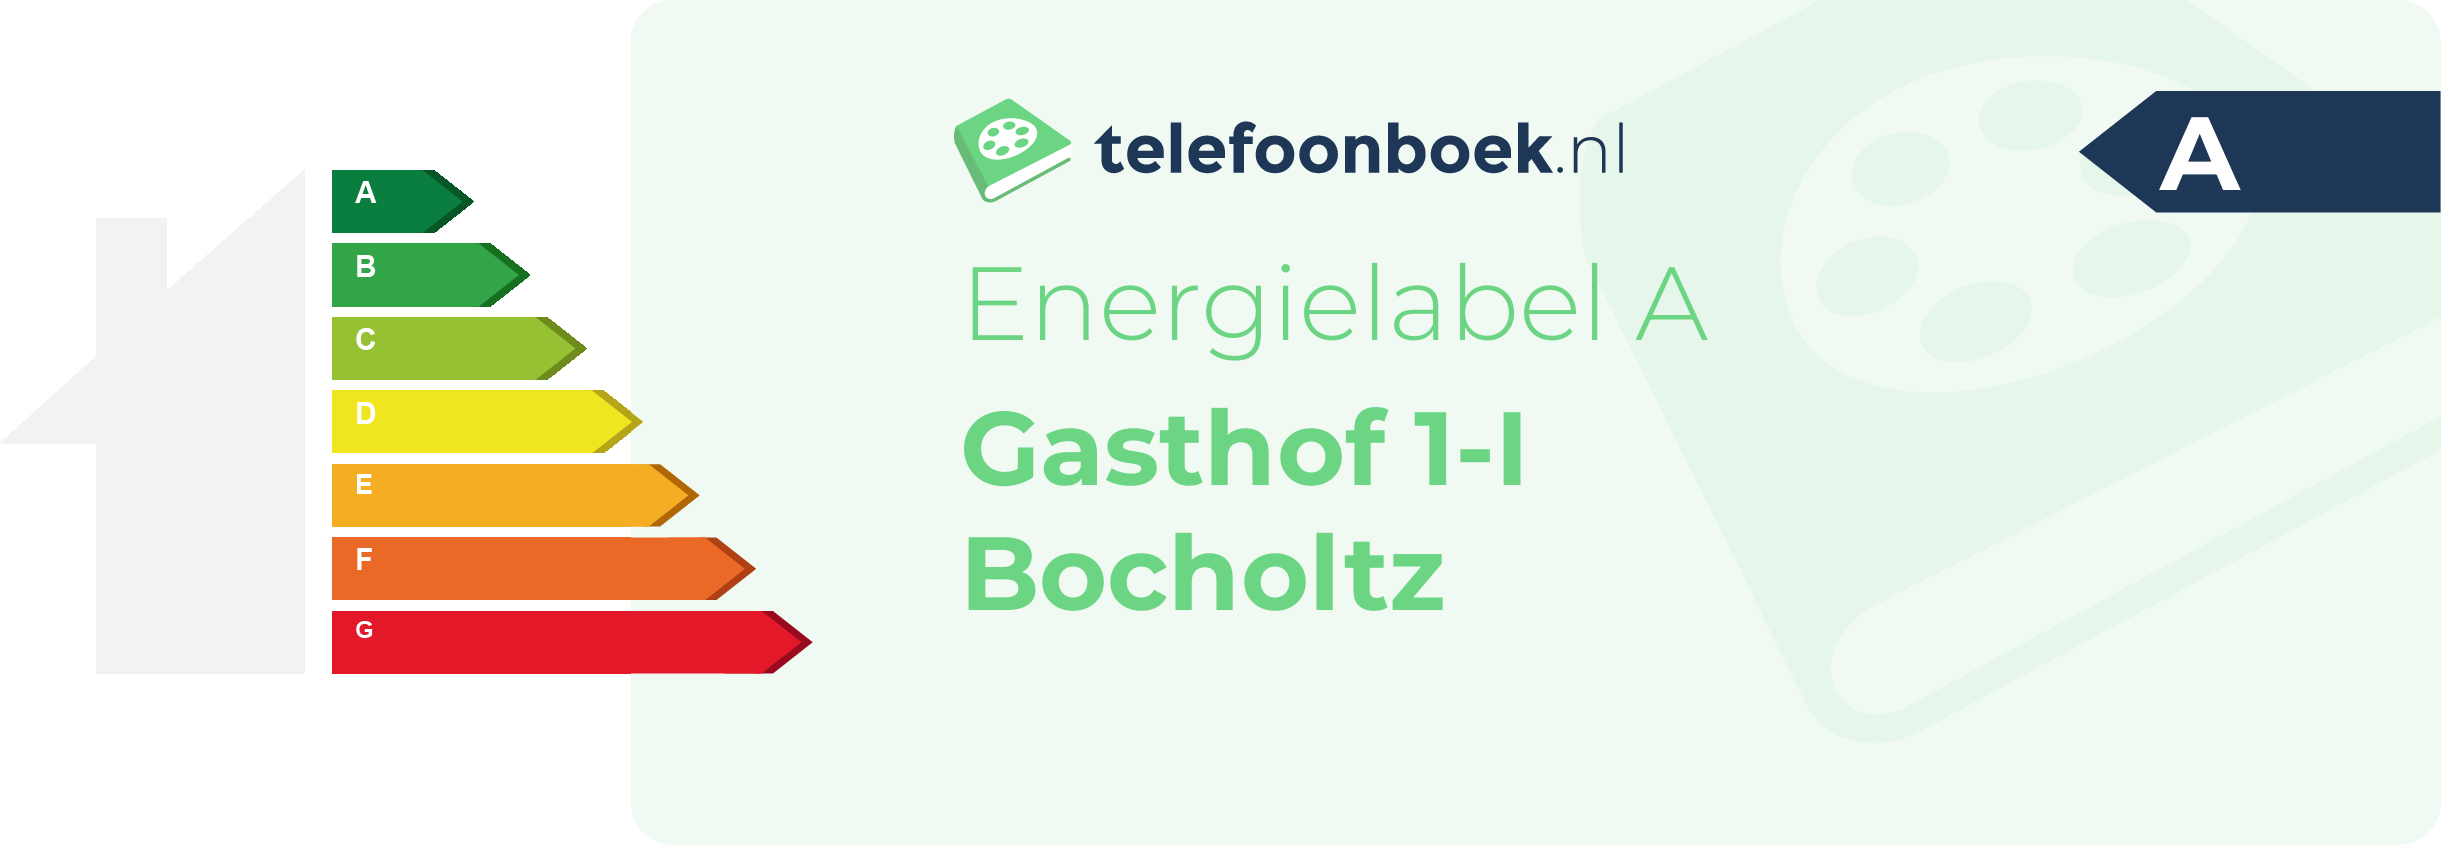 Energielabel Gasthof 1-I Bocholtz